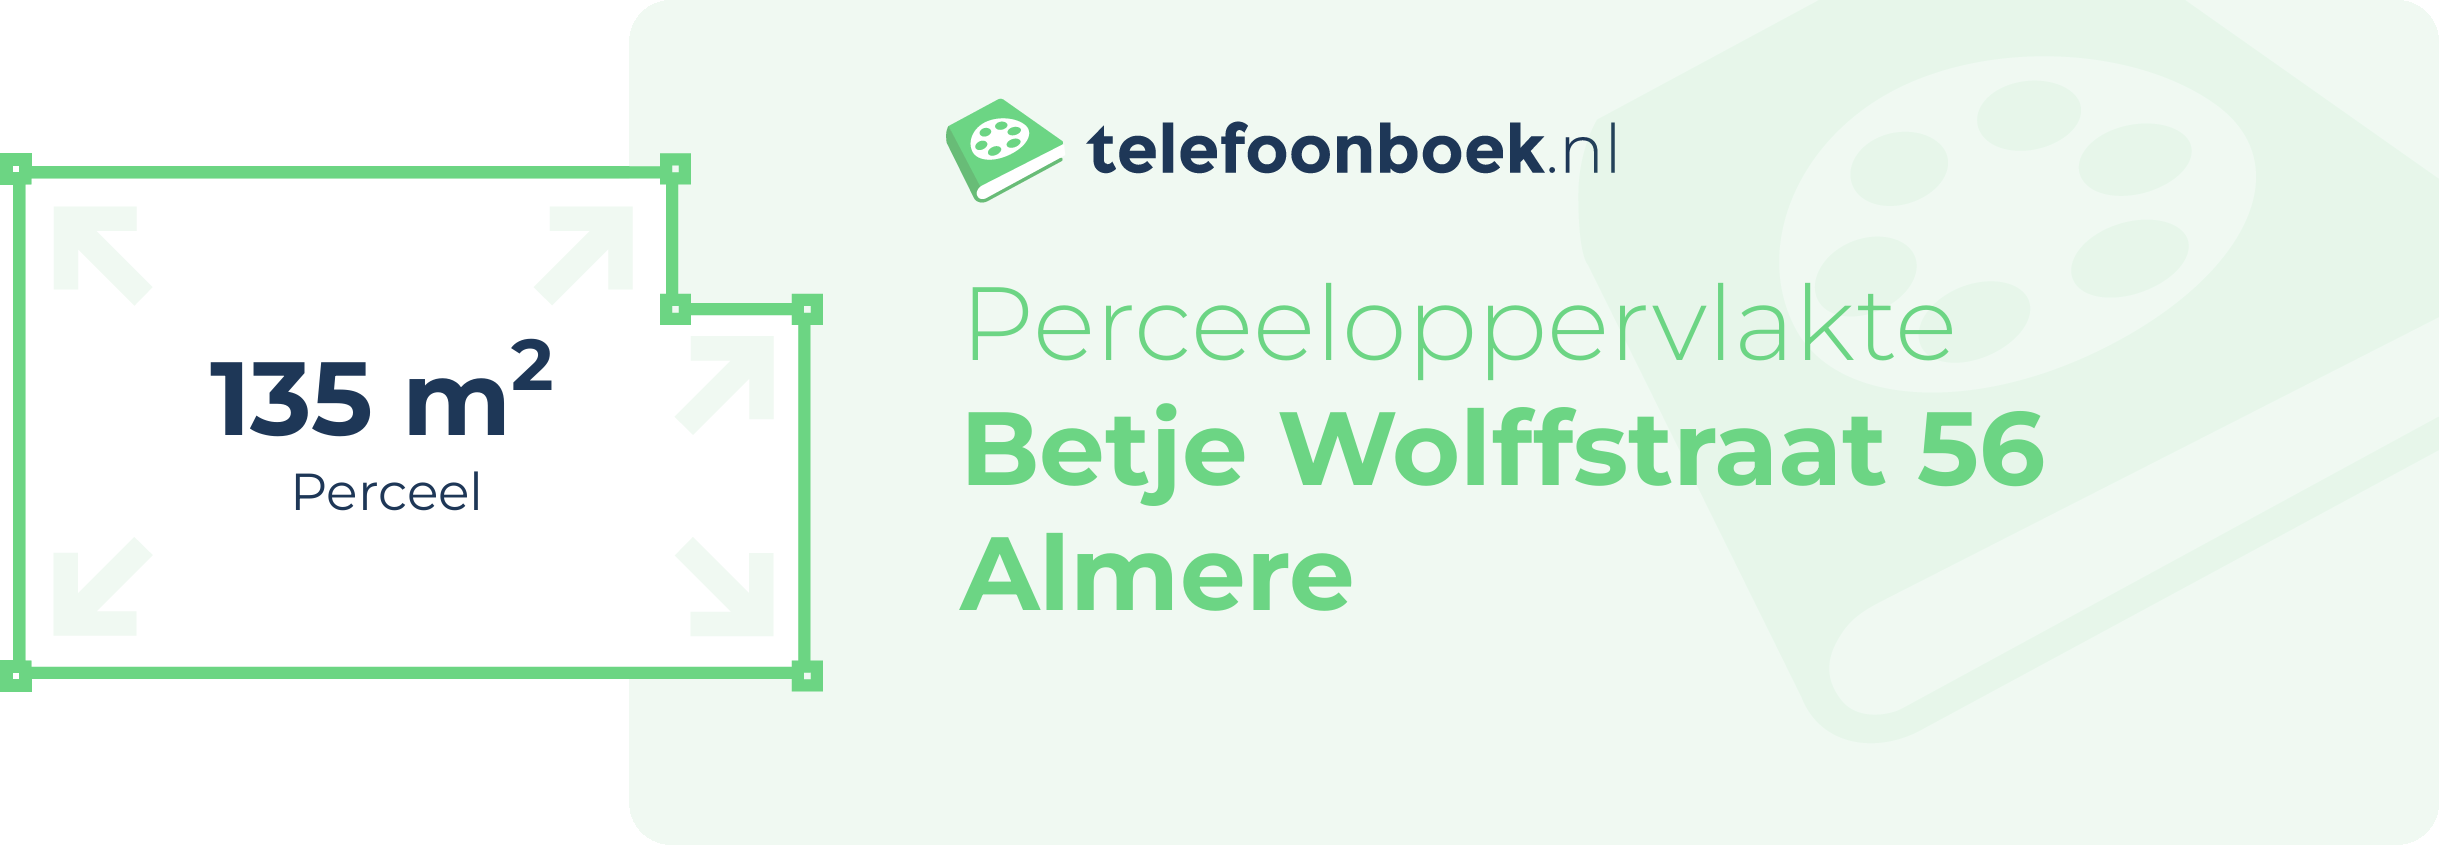 Perceeloppervlakte Betje Wolffstraat 56 Almere